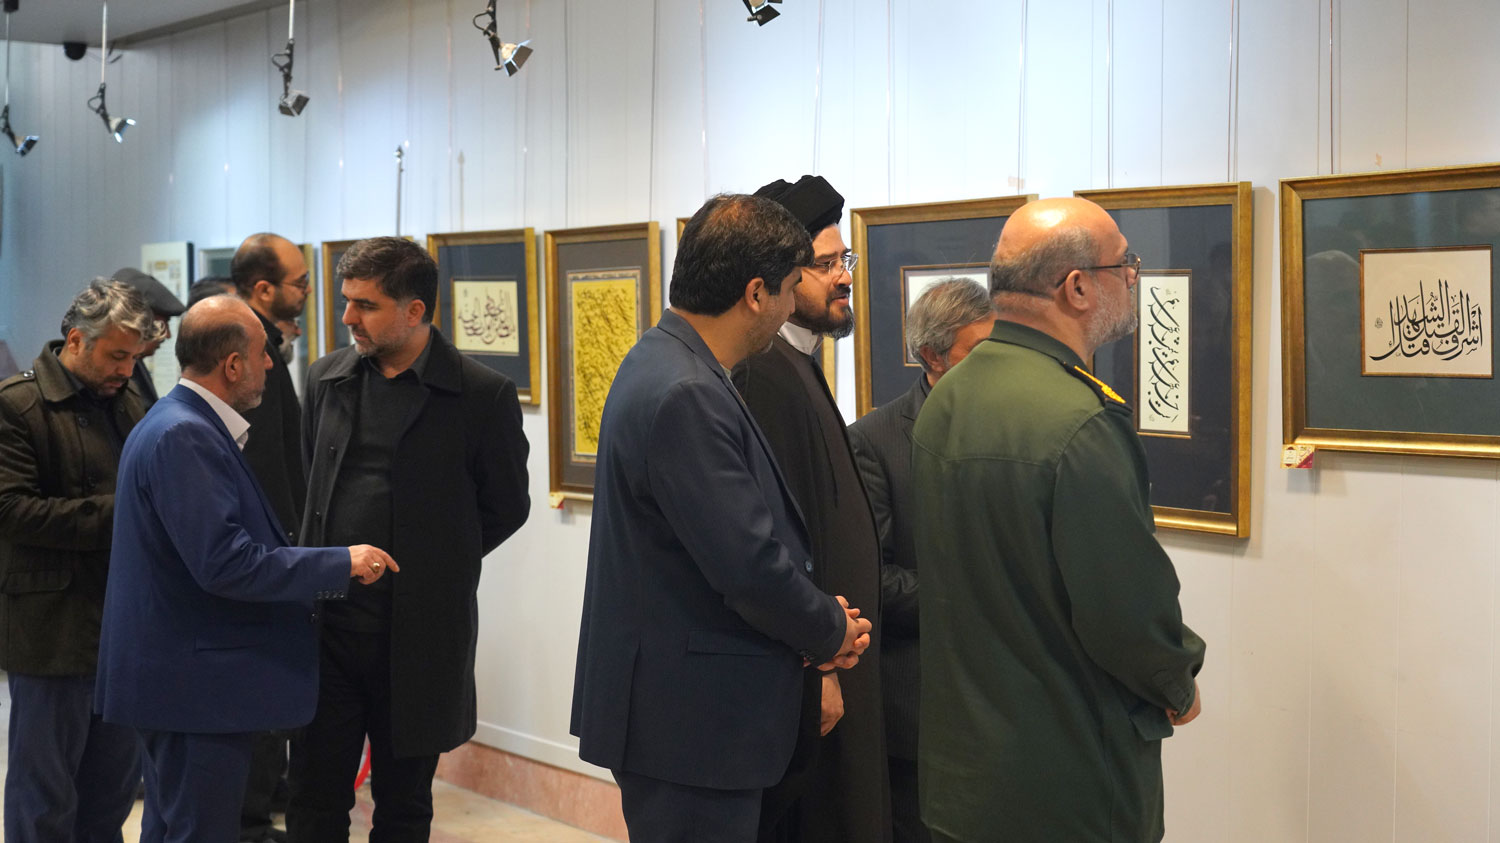 برپایی نمایشگاه خوشنویسی «خط سرخ» در نگارستان اشراق